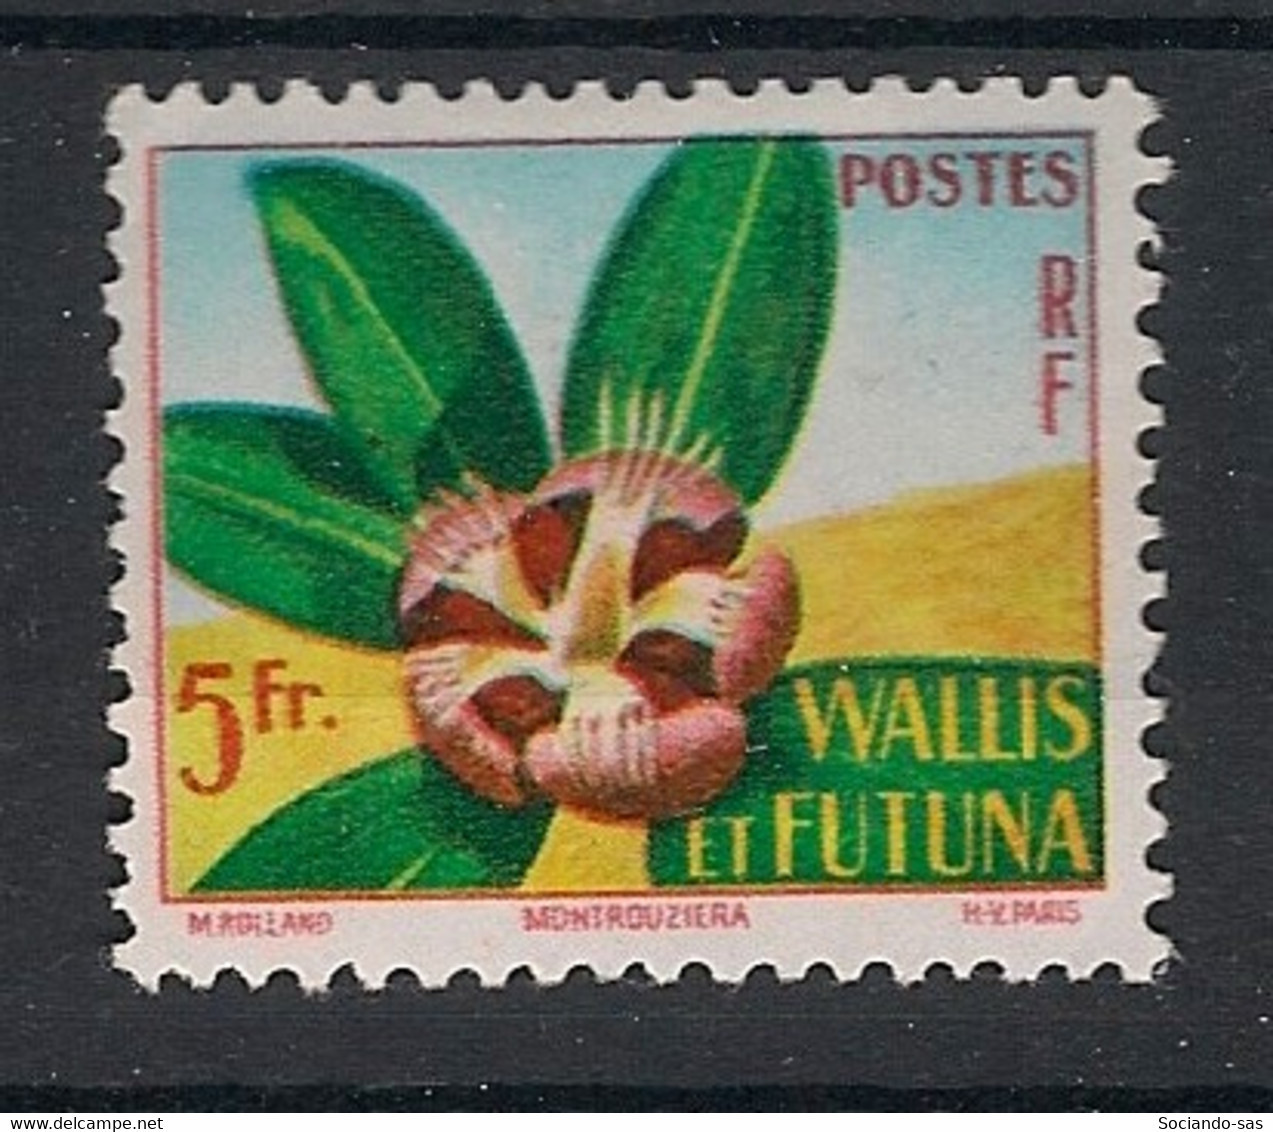 WALLIS ET FUTUNA - 1958 - N°Yv. 159 - Fleur - Neuf Luxe ** / MNH / Postfrisch - Unused Stamps